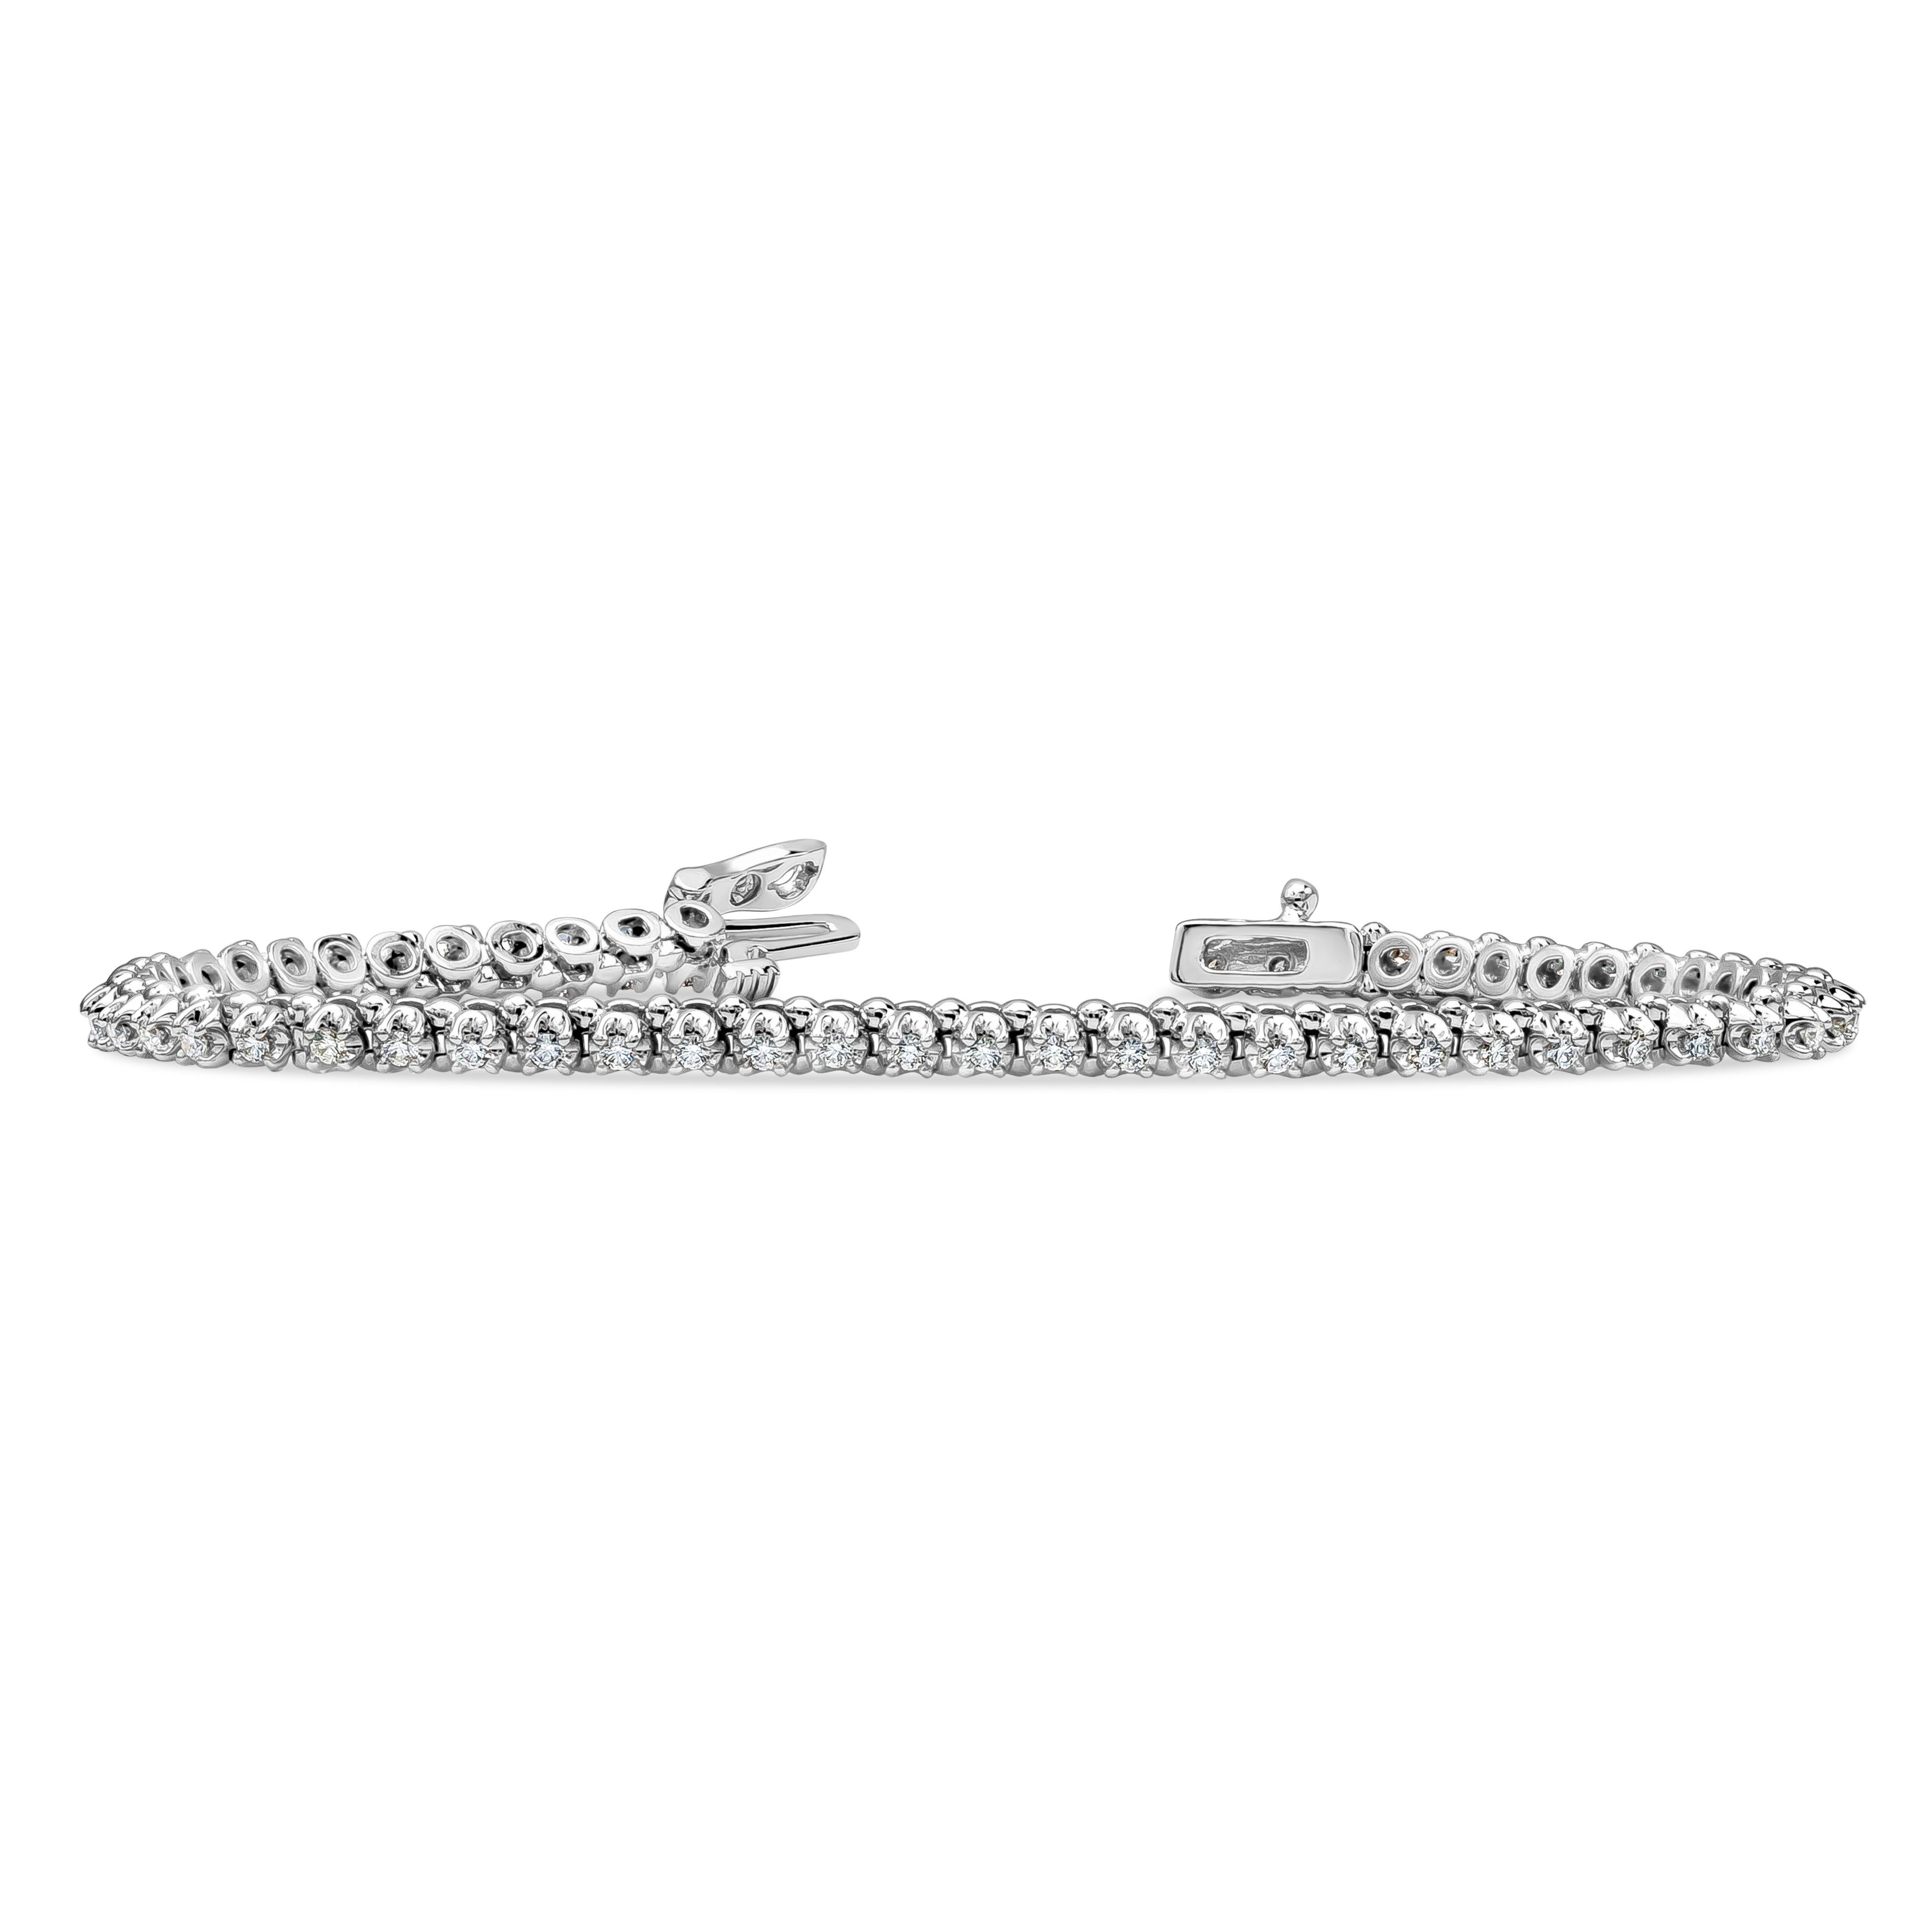 Un bracelet tennis classique mettant en valeur 56 diamants ronds brillants d'un poids total de 0.88 carats, de couleur F et de pureté VS2. Largeur de 1,50 mm et longueur de 7 pouces, fabriqué en or blanc 14K.

Style disponible dans différentes